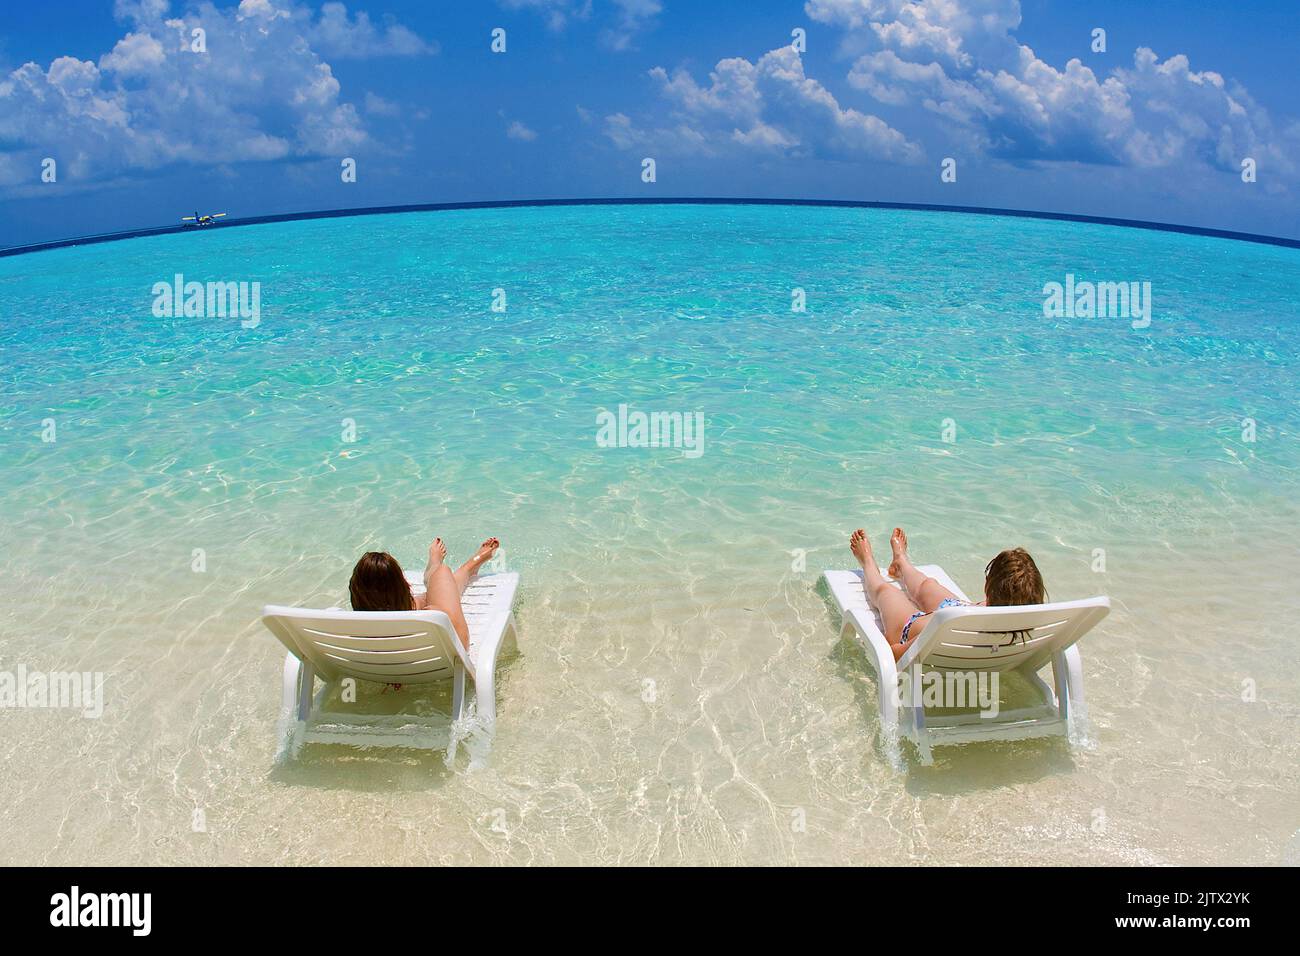 Urlauber entspannen auf Sonnenliegen in der Lagune der maledivischen Insel Biyadhoo, Süd-Male Atoll, Malediven, Indischer Ozean, Asien Stockfoto